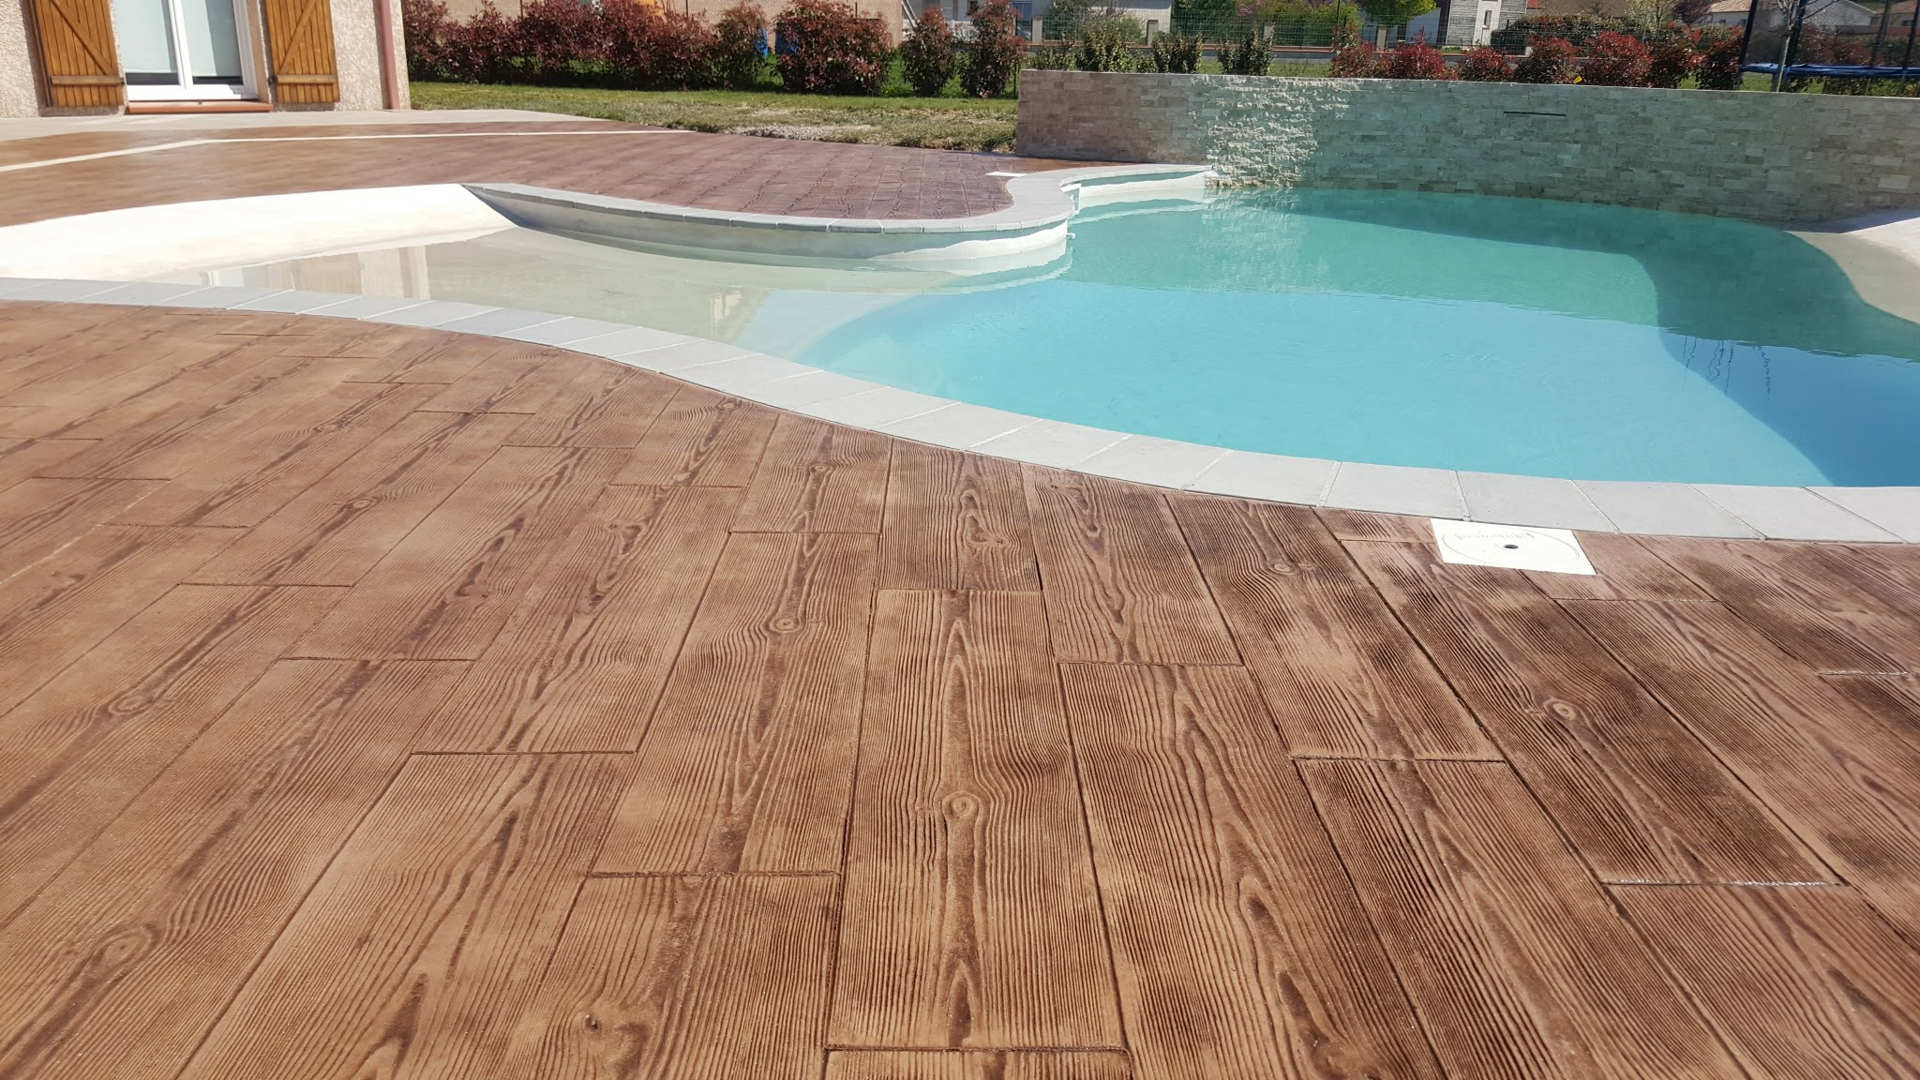 Concreto estampado imitação madeira no chão ao redor da piscina